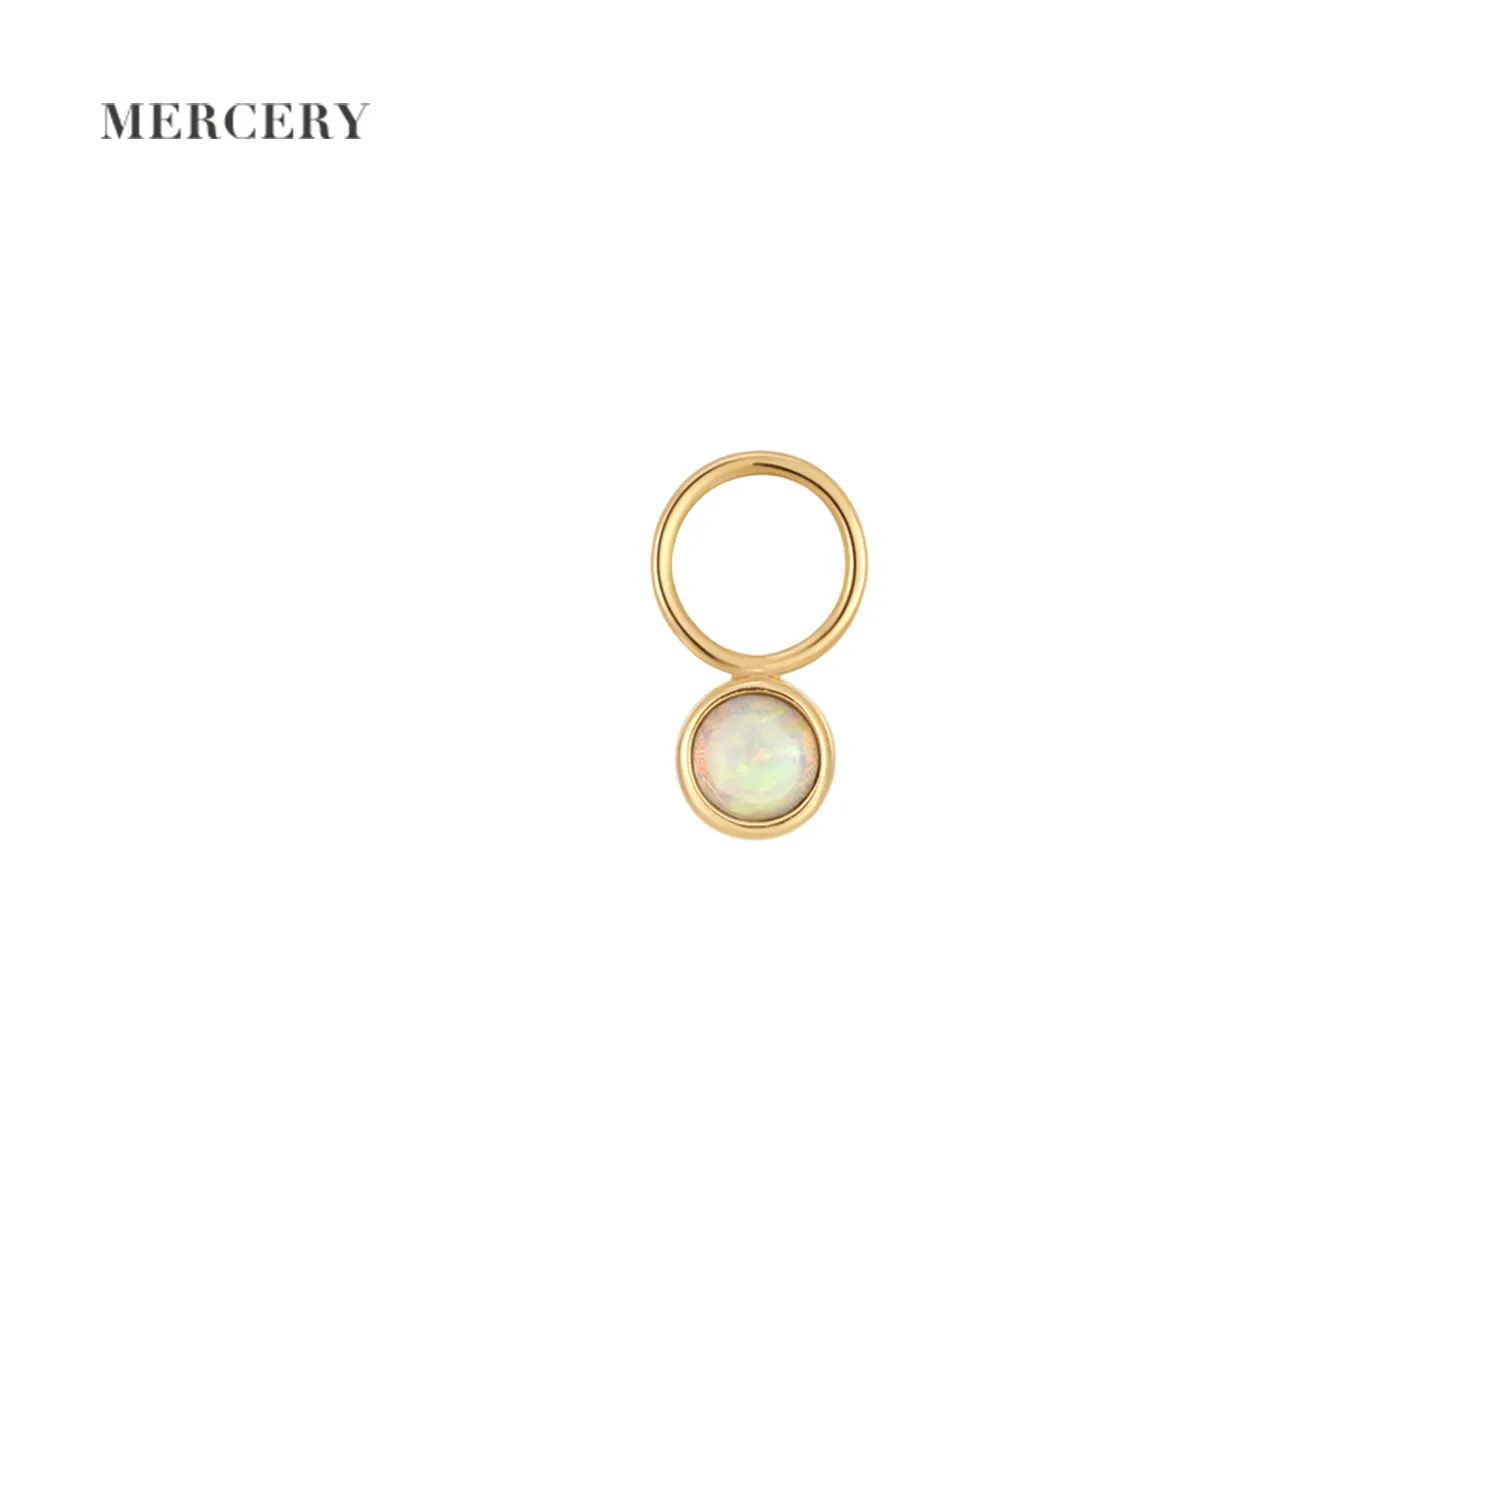 Индивидуальная подвеска Mercery с прогнозом поо, жемчуг ODM, аксессуары для ювелирных изделий на заказ, фурнитура 14 карат, цельное золото, ювелирные изделия, серьги «сделай сам», подвеска